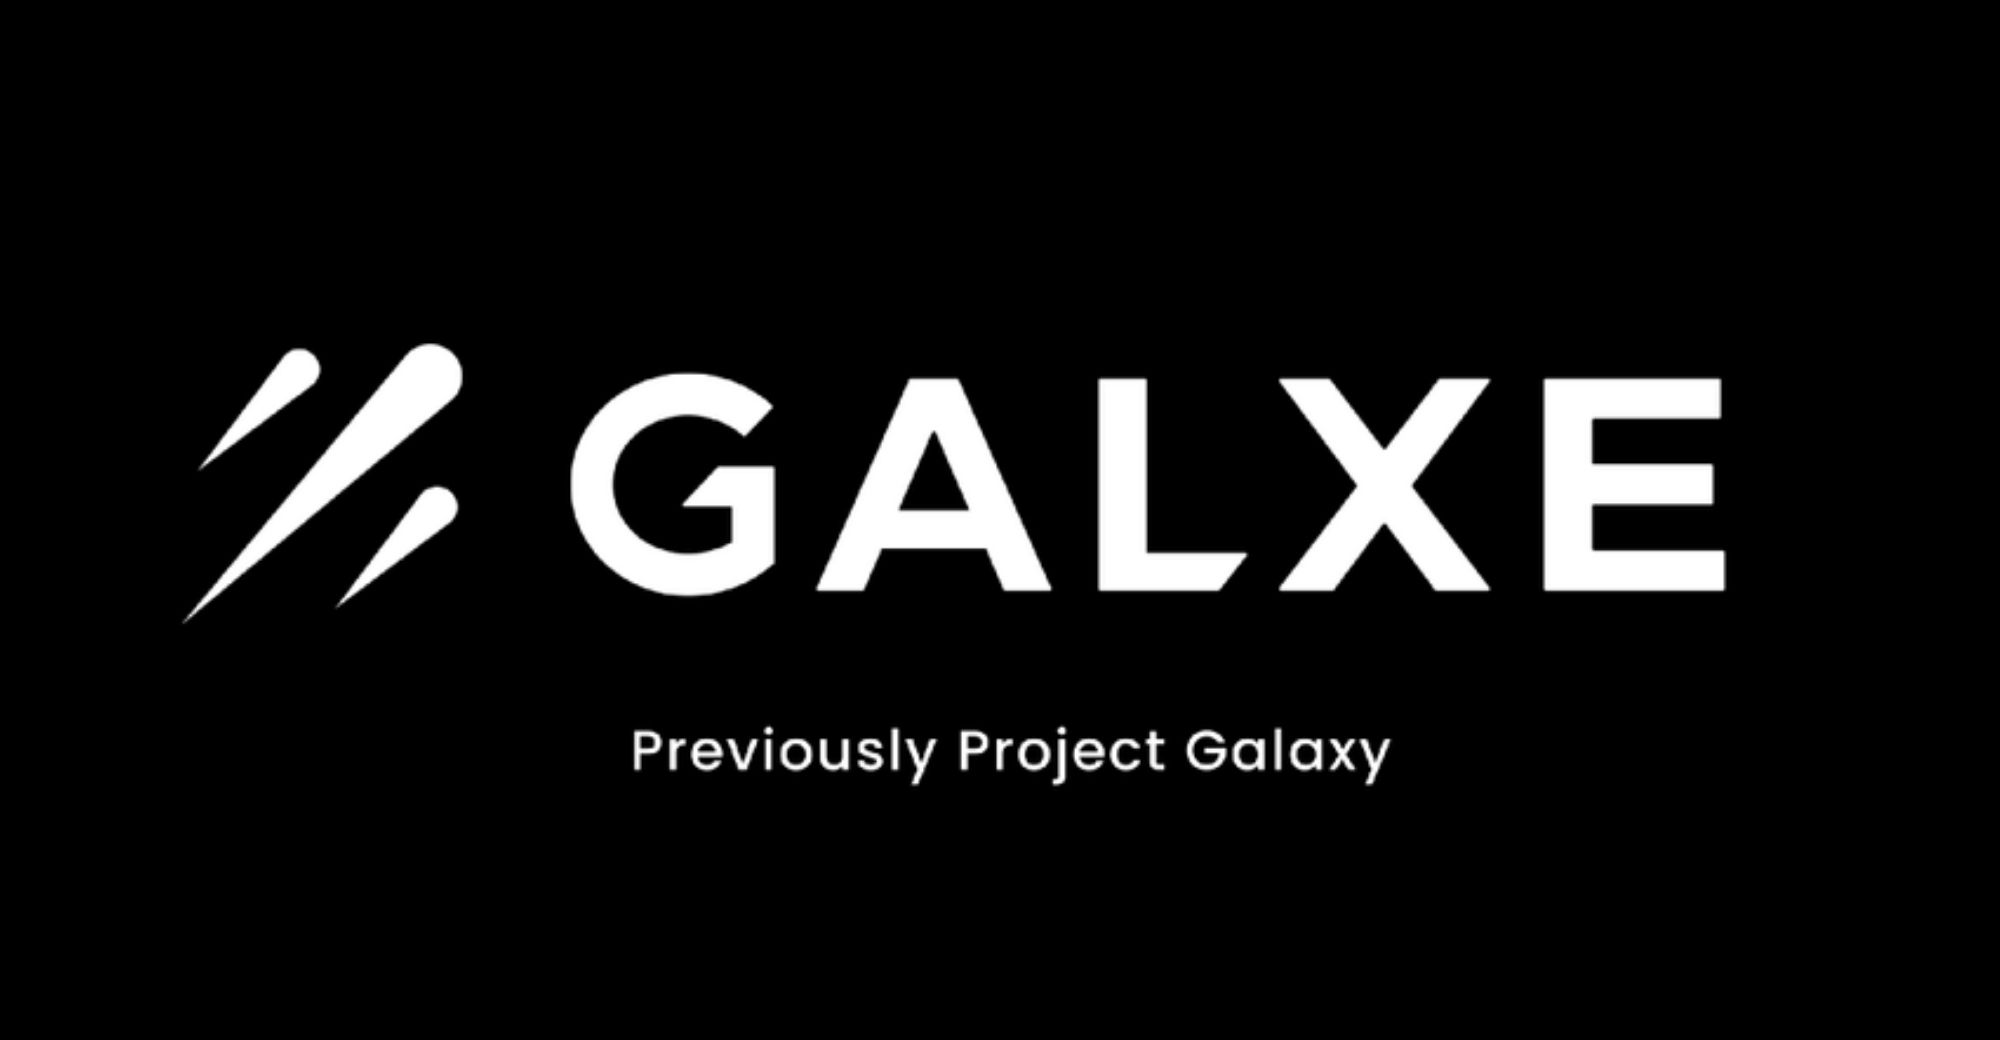 Galaxy စီမံကိန်းကို Galxe ဟုအမည် ပြောင်း ပြီး ဂေဟစနစ် သို့ပြောင်းလဲ ခဲ့သည်